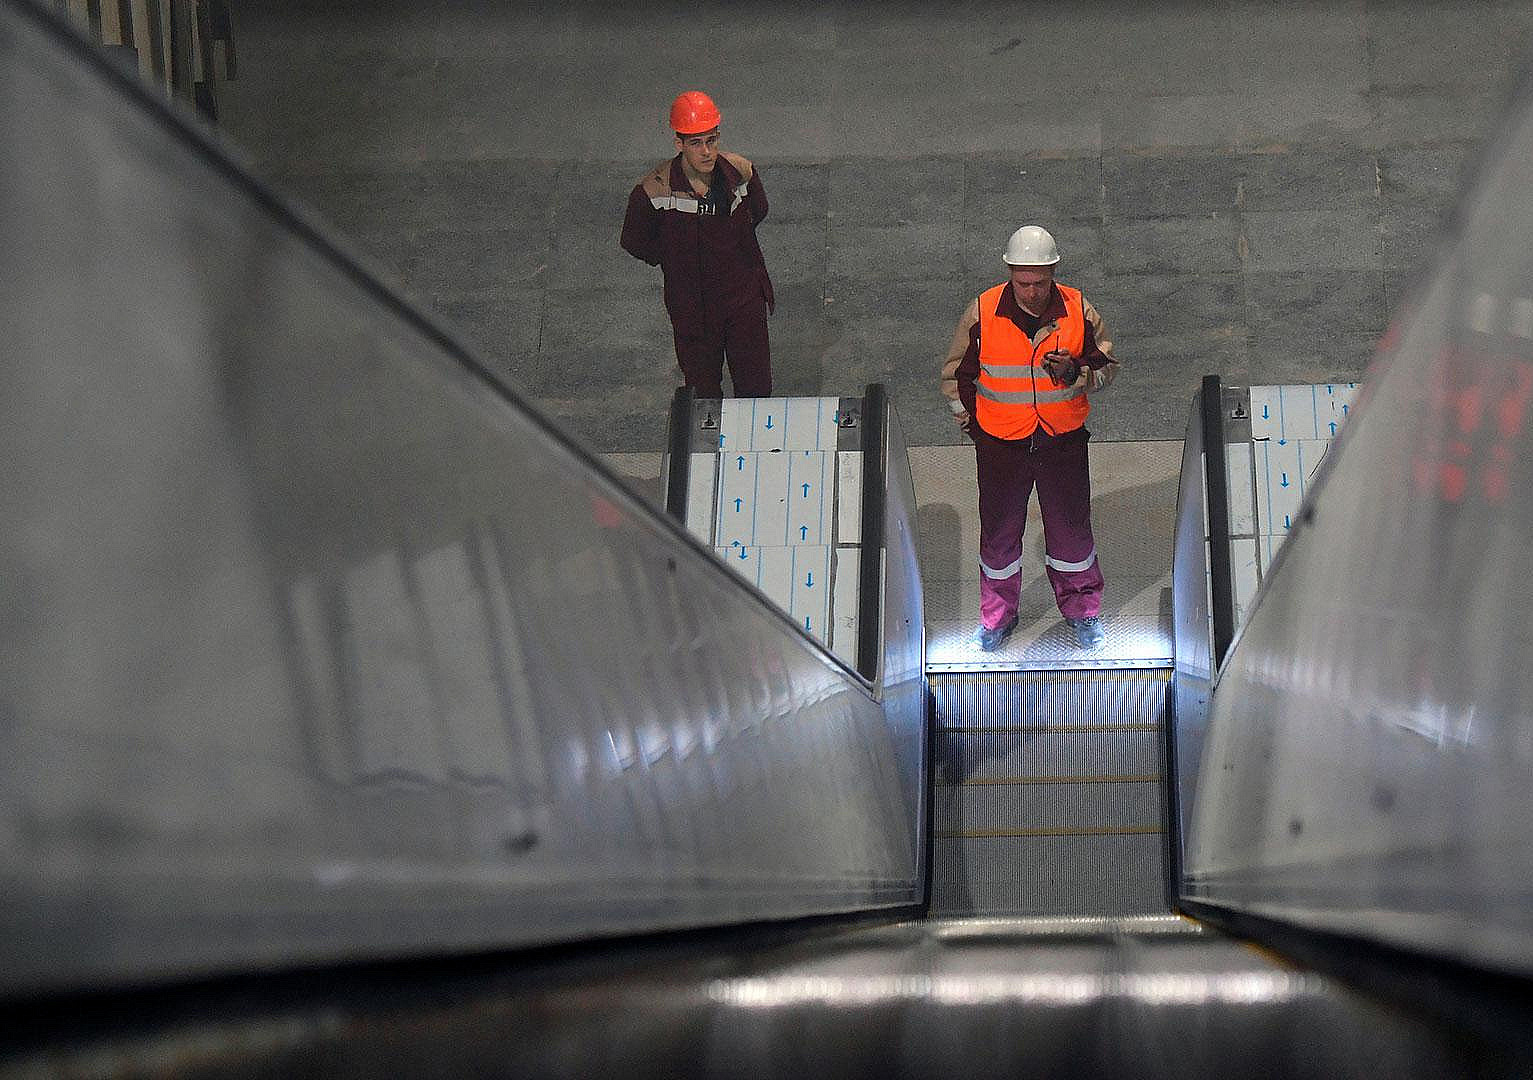 Эскалатор между станциями метро «Октябрьская» Калужско-Рижской и Кольцевой линий закроют на ремонт